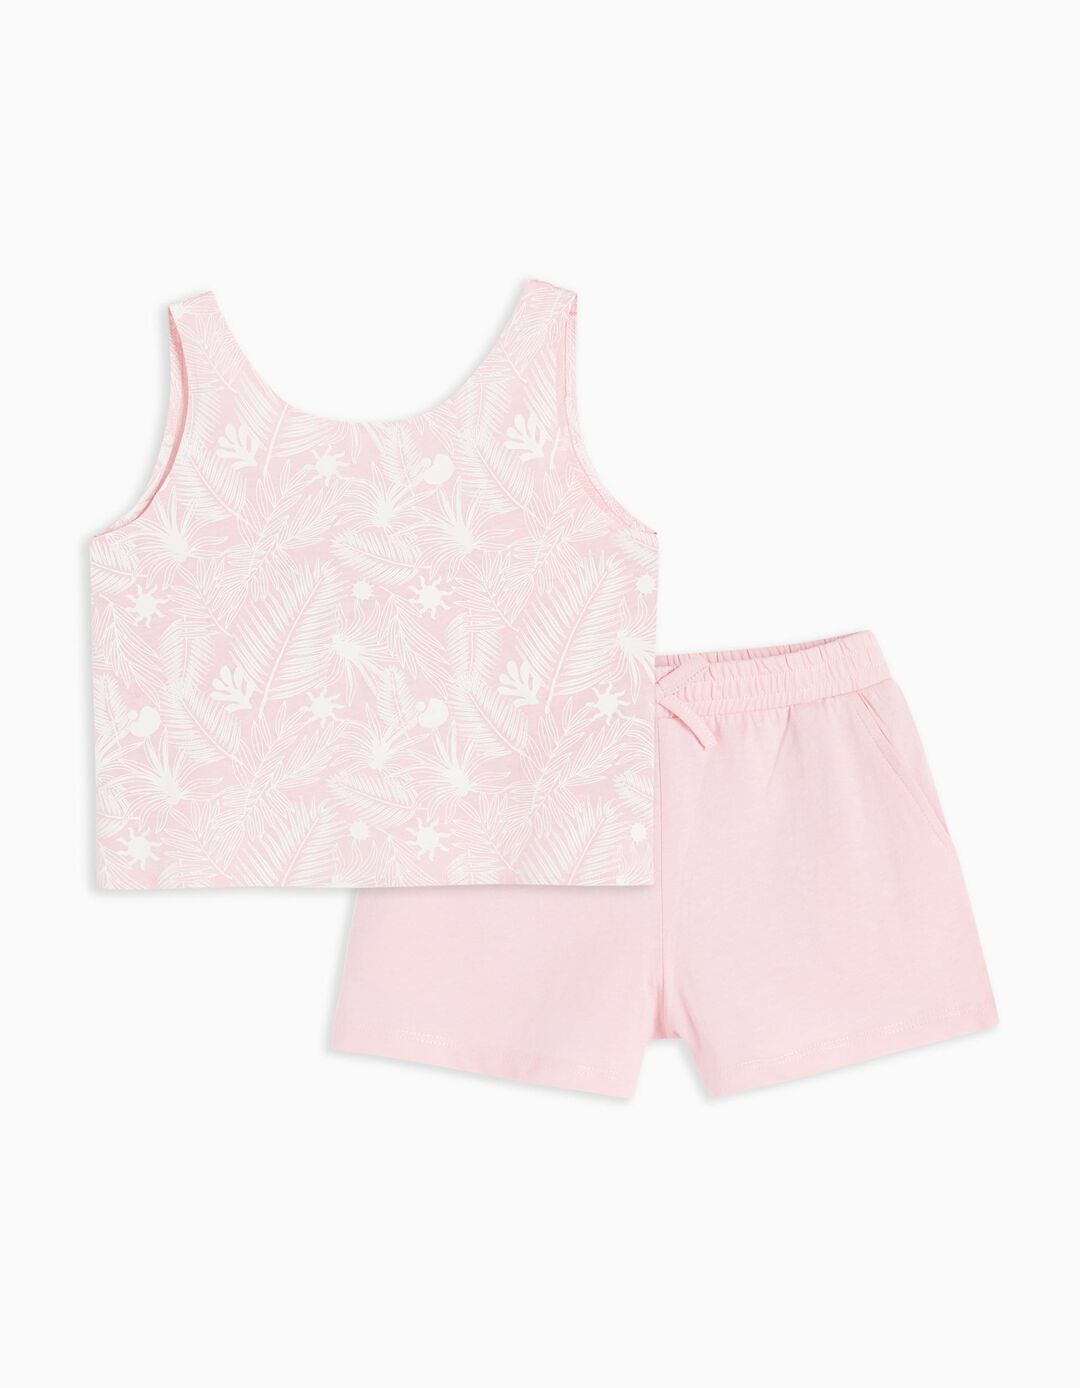 Sleeveless T-shirt + Shorts Set, Girls, Light Pink